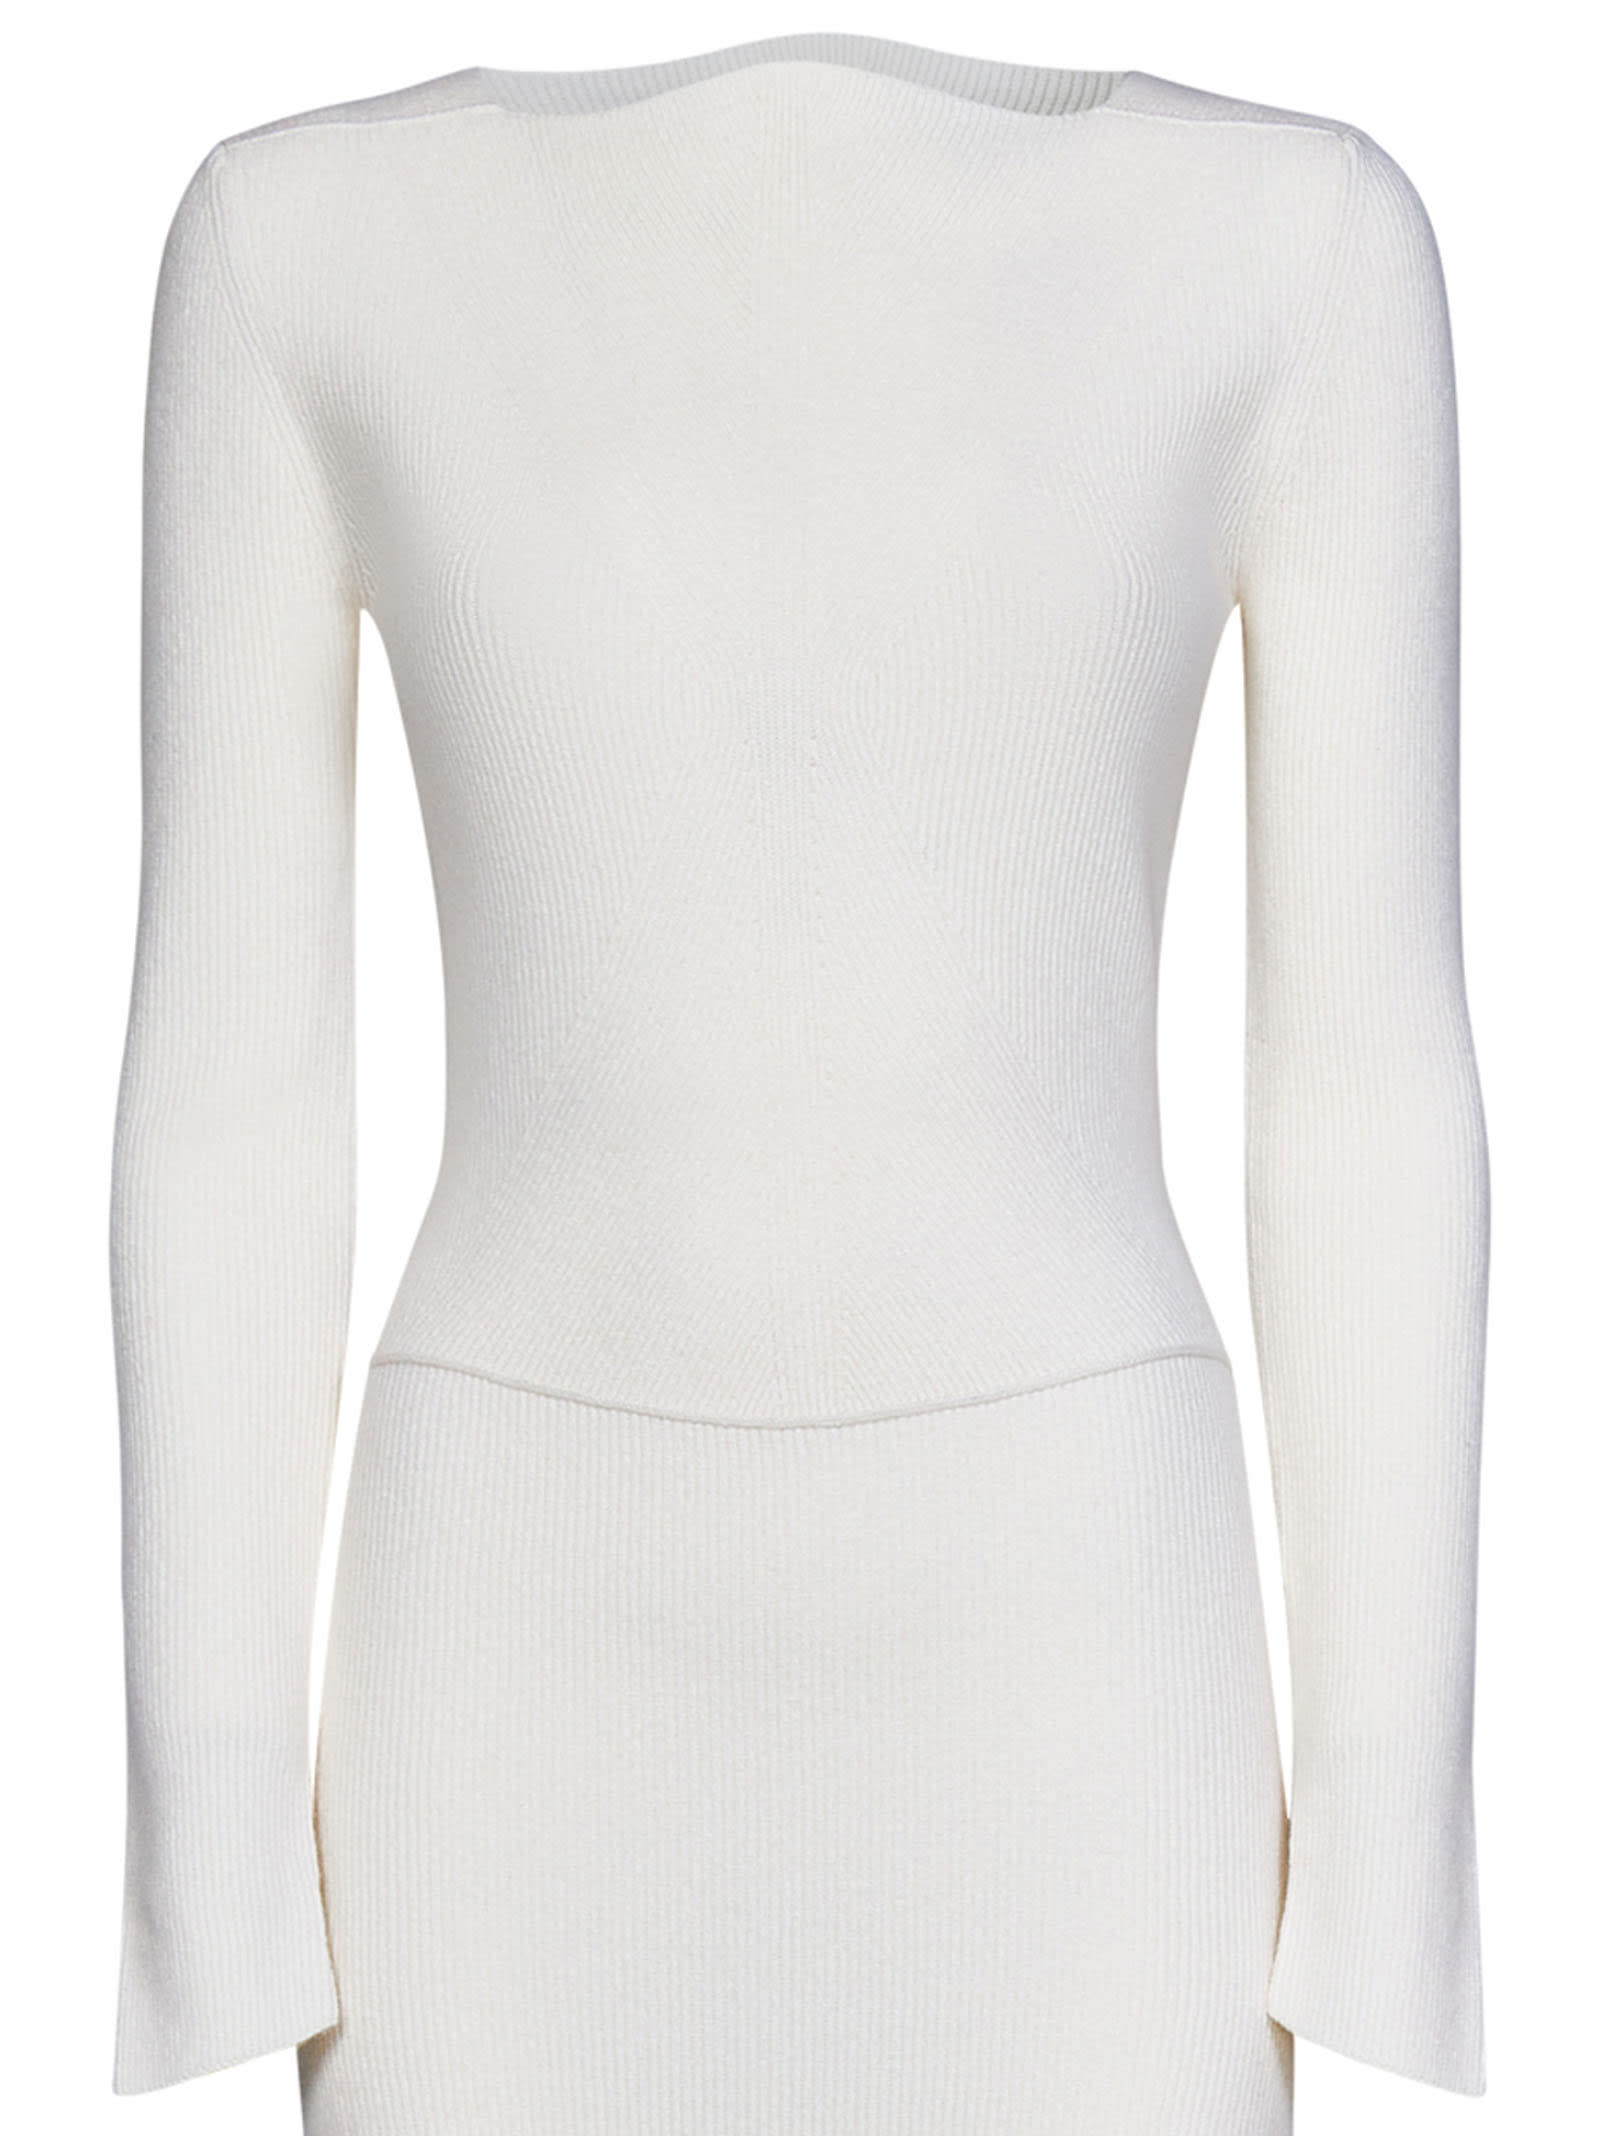 Shop Victoria Beckham Midi Dress In White